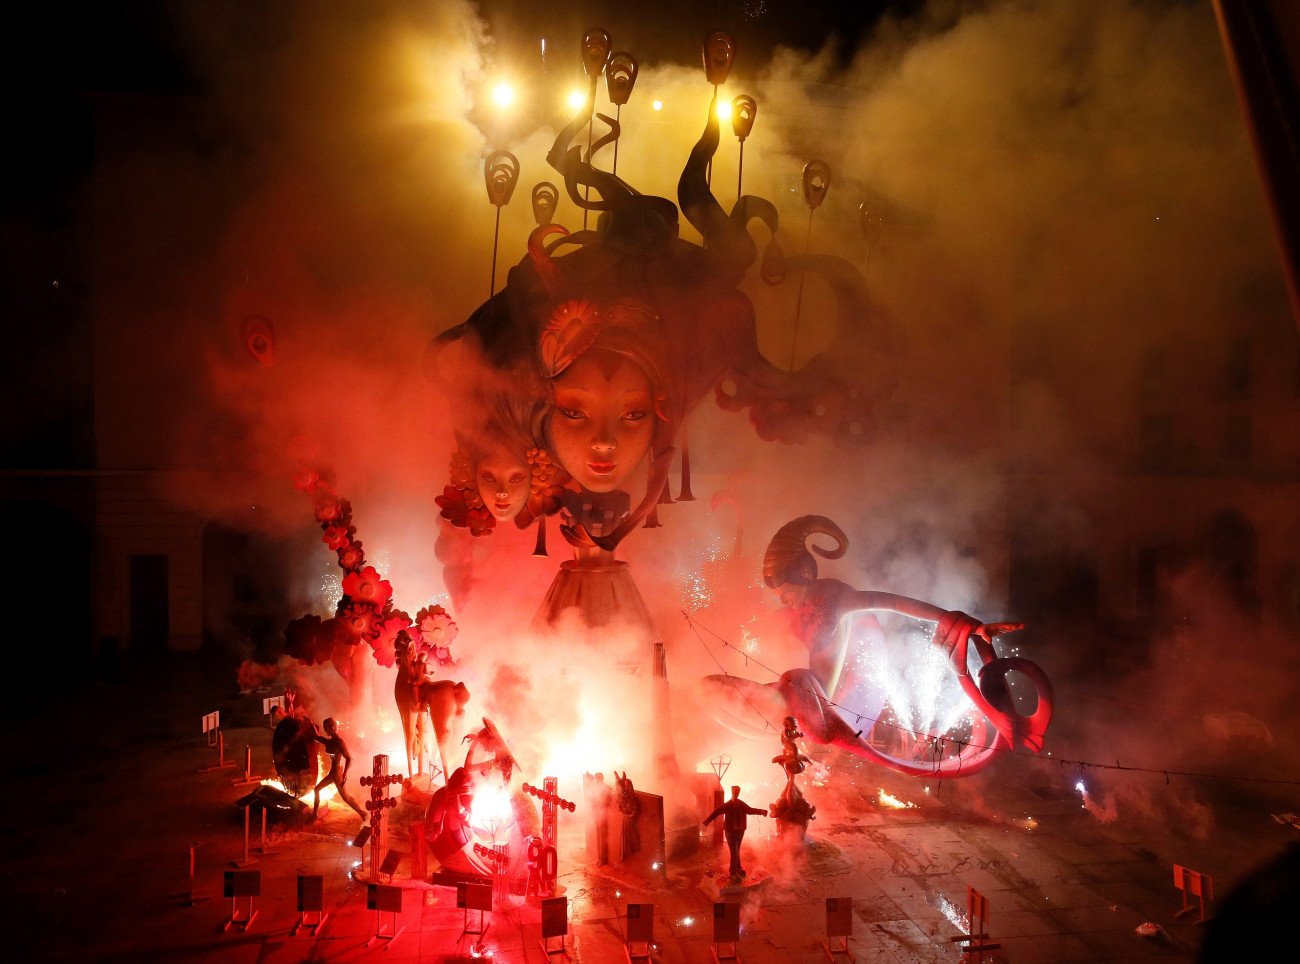 Fából és papírmaséból készített szobrokat emészt fel máglyatűz a Szent Iván-éji ünnepségen a kelet-spanyolországi Alicantében 2018. június 24-én. A csillagászati nyár kezdetét jelölő nyári napforduló utáni harmadik nap estéjén hagyományosan énekléssel, tánccal és tűzugrással űzik el a sötétséget, és köszöntik a nyárral érkező megújulást. (MTI/EPA/Manuel Lorenzo)